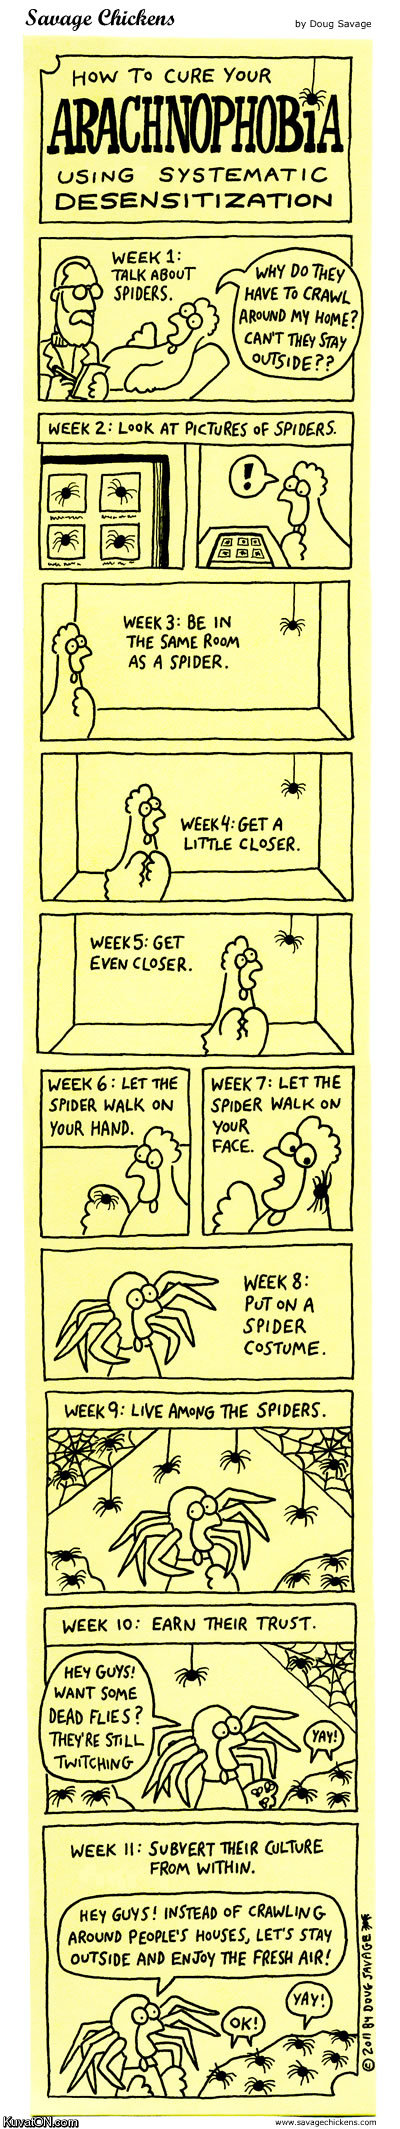 arachnophobia_comic.jpg